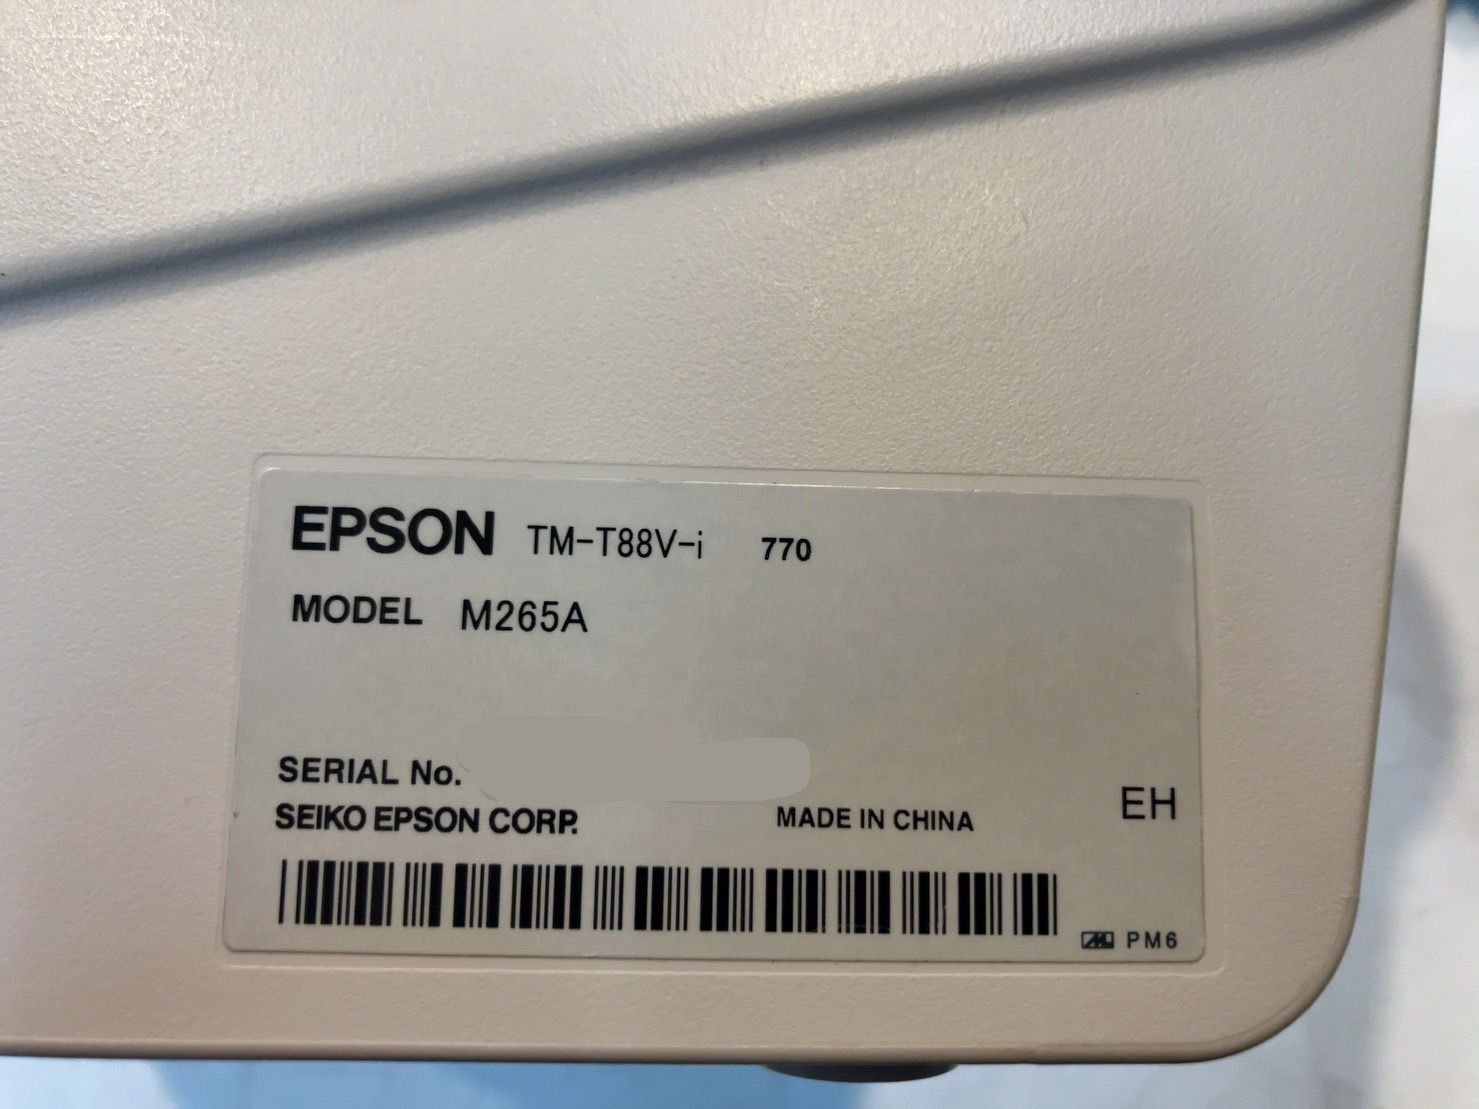 即納!!有線LAN対応!【EPSON】エプソンレシートプリンター TM-T88V-i サーマルプリンタ (80mm幅/ホワイト)TMT885I770  TM-T88V-i 770　M265A　純正ACアダプタ付属